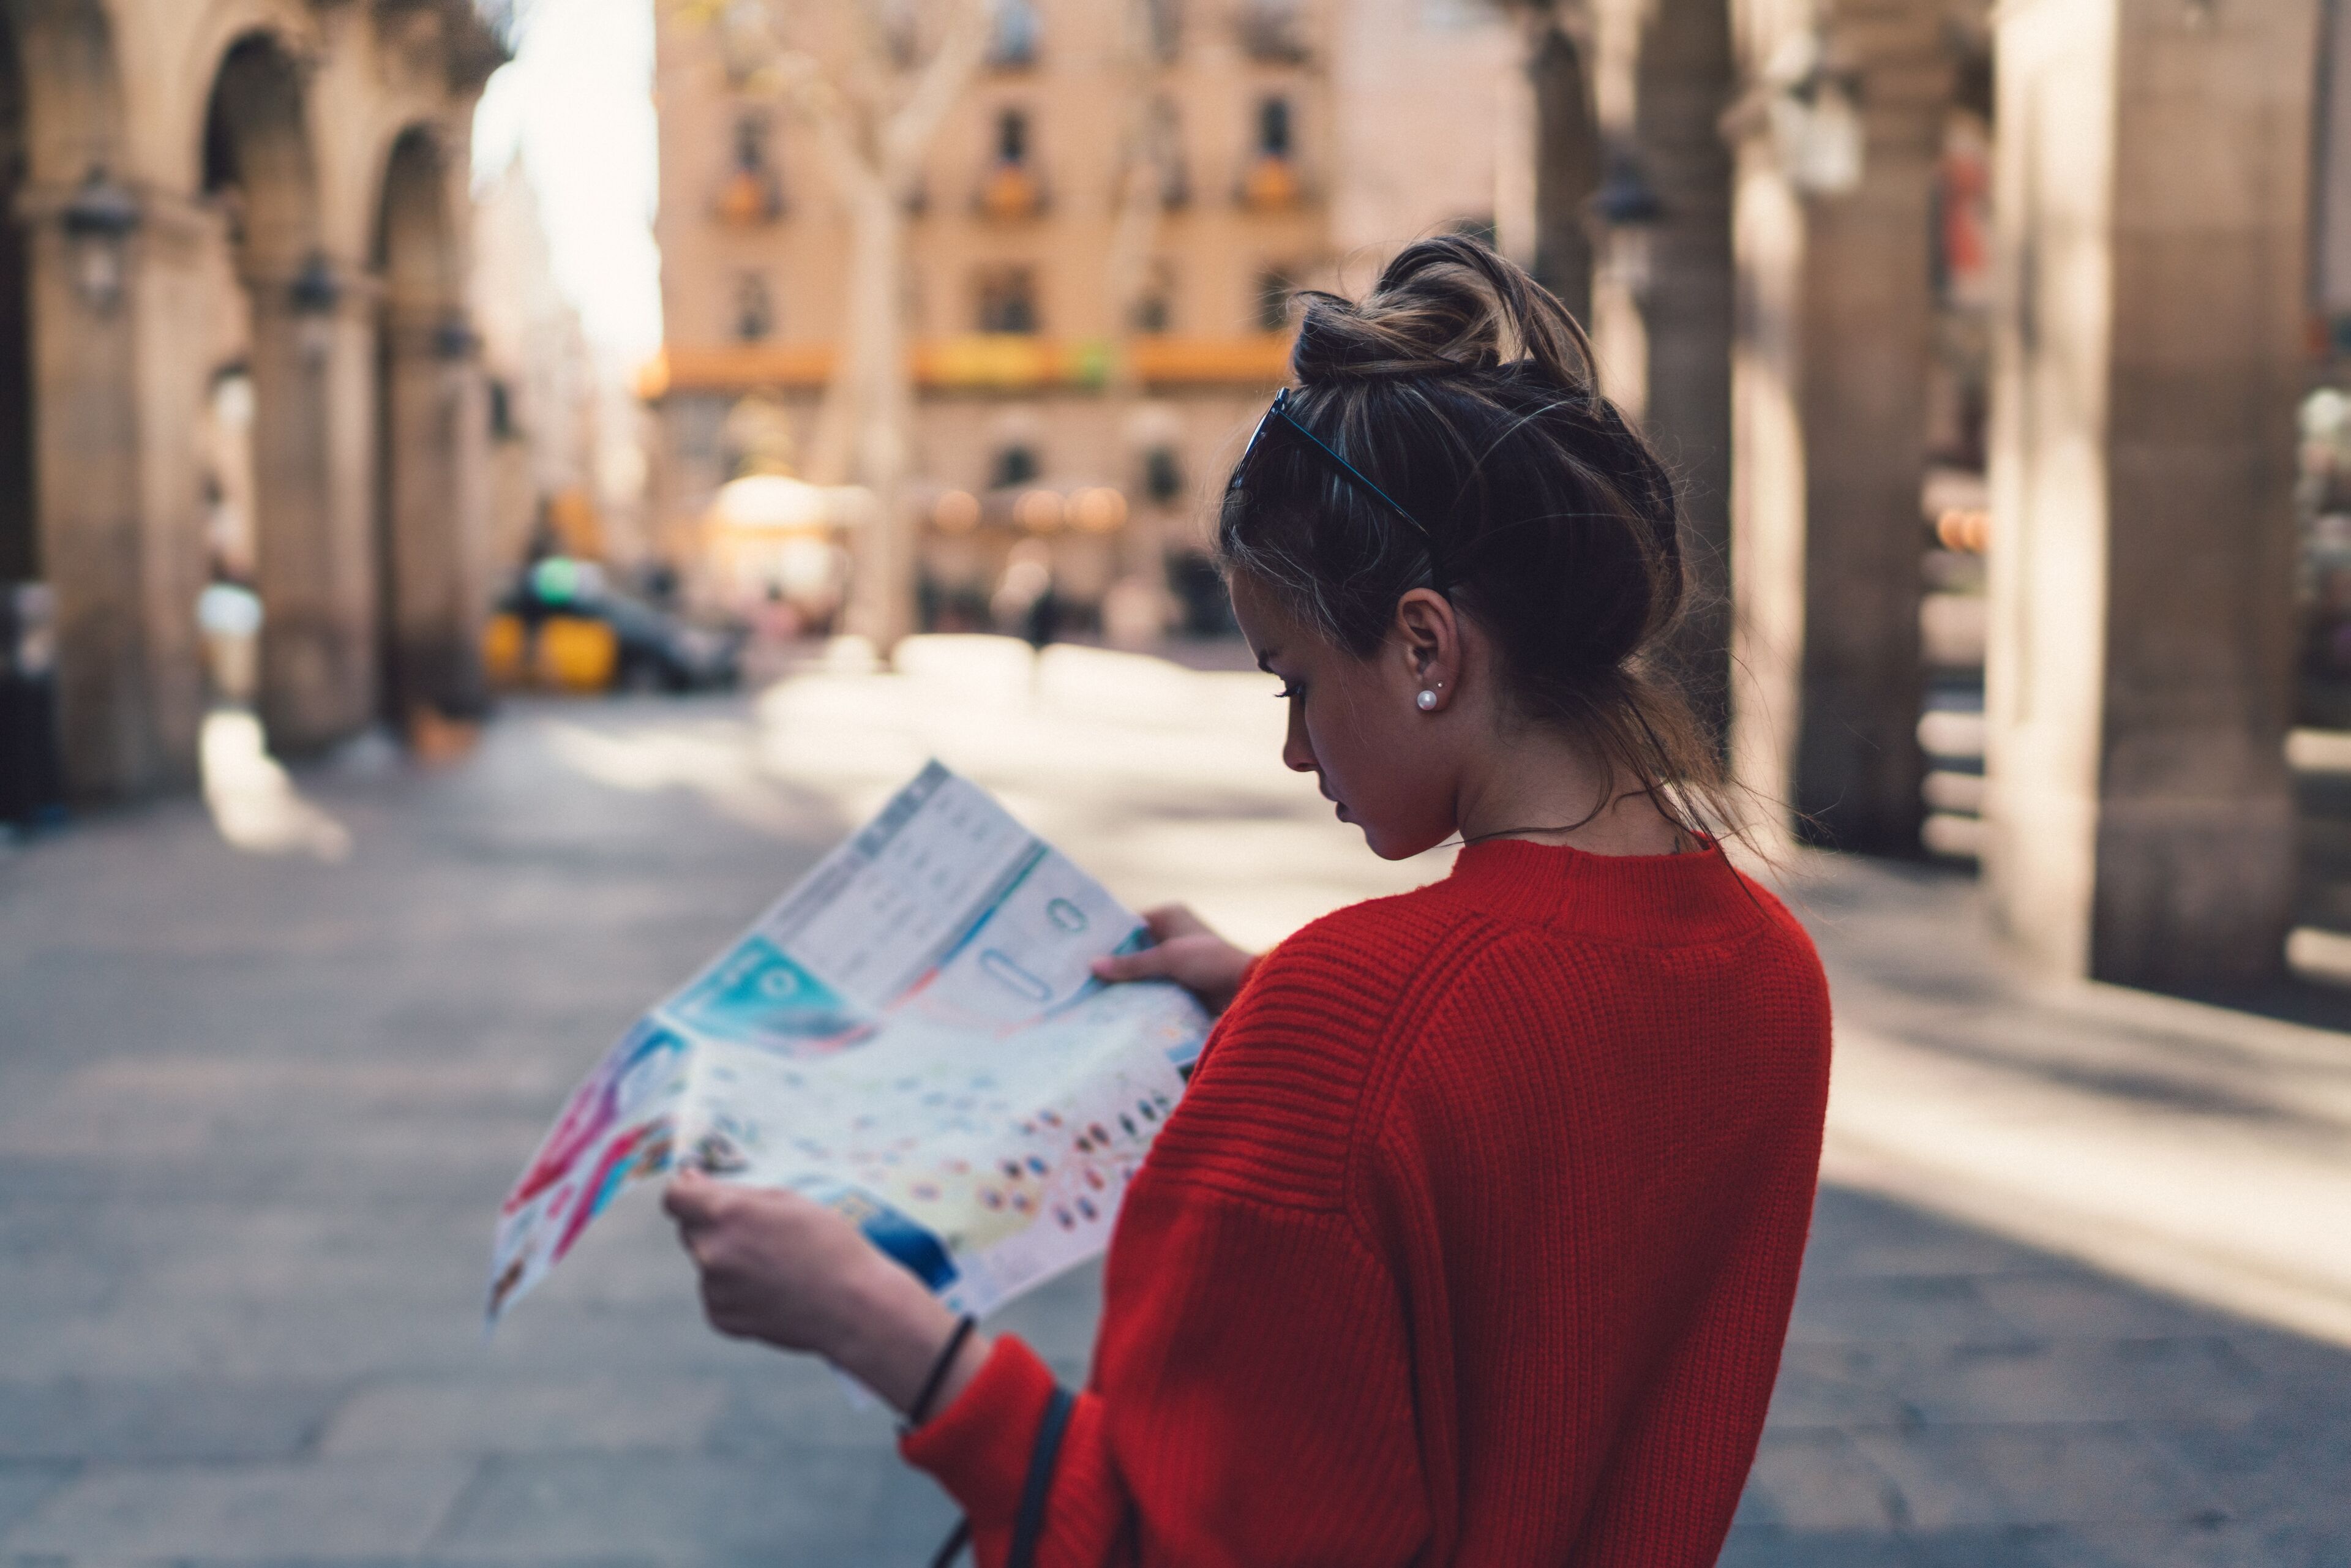 Una joven con un suéter rojo brillante estudia atentamente un mapa, de pie en una calle empedrada con arquitectura histórica desenfocada al fondo.